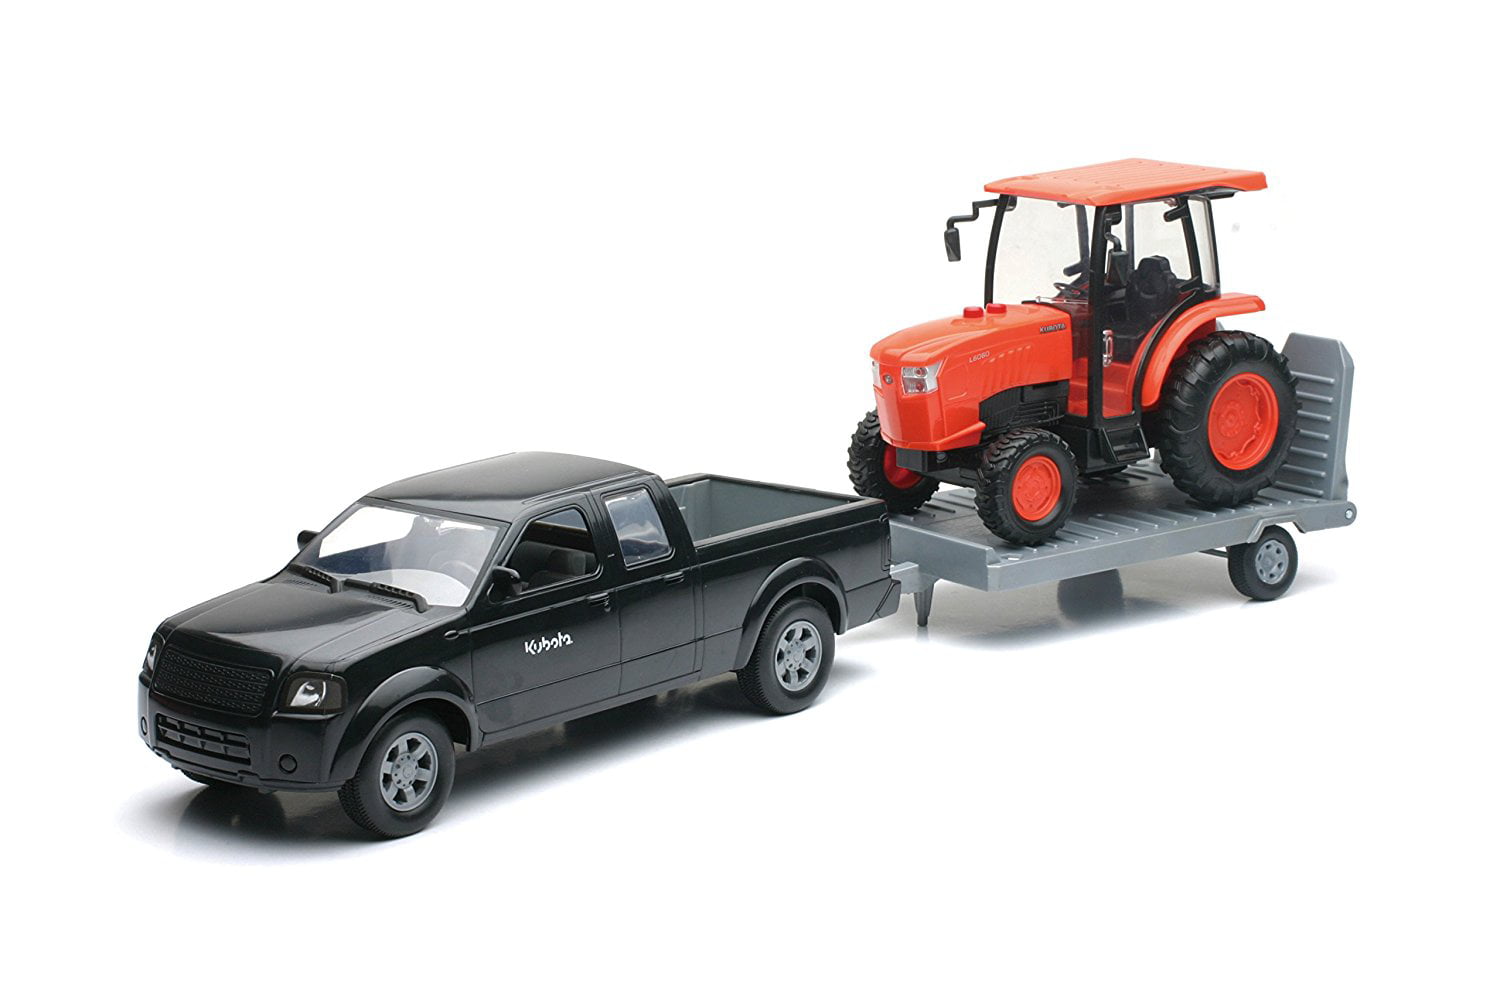 kubota tractor toy models